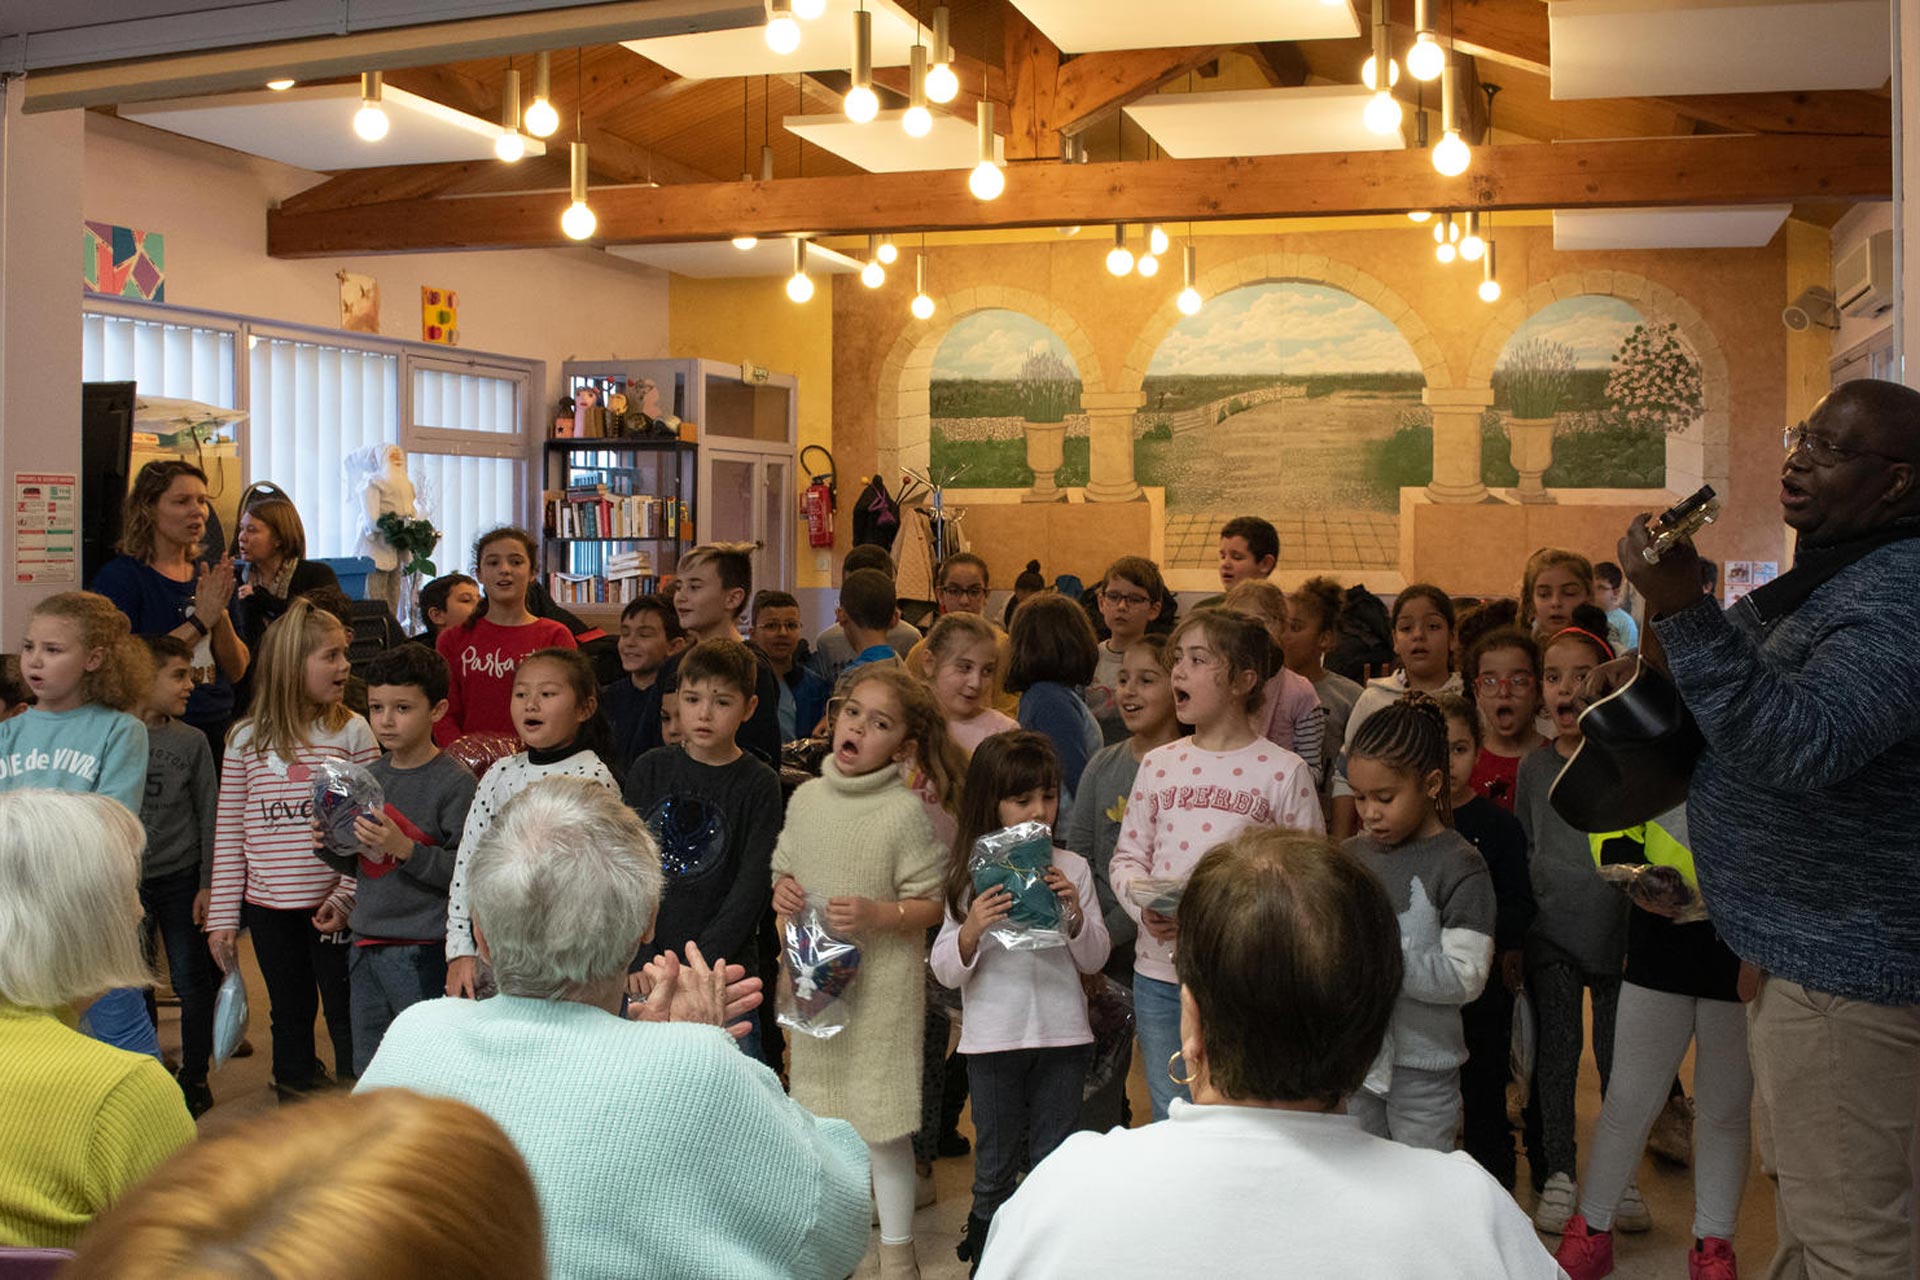 Le 19 décembre 2019, les élèves de l’école Louis Pasteur ont interprété un florilège de chants de Noël aux seniors de l’Espace Abbaye qui, eux, leur ont offert des cadeaux confectionnés par leurs soins.